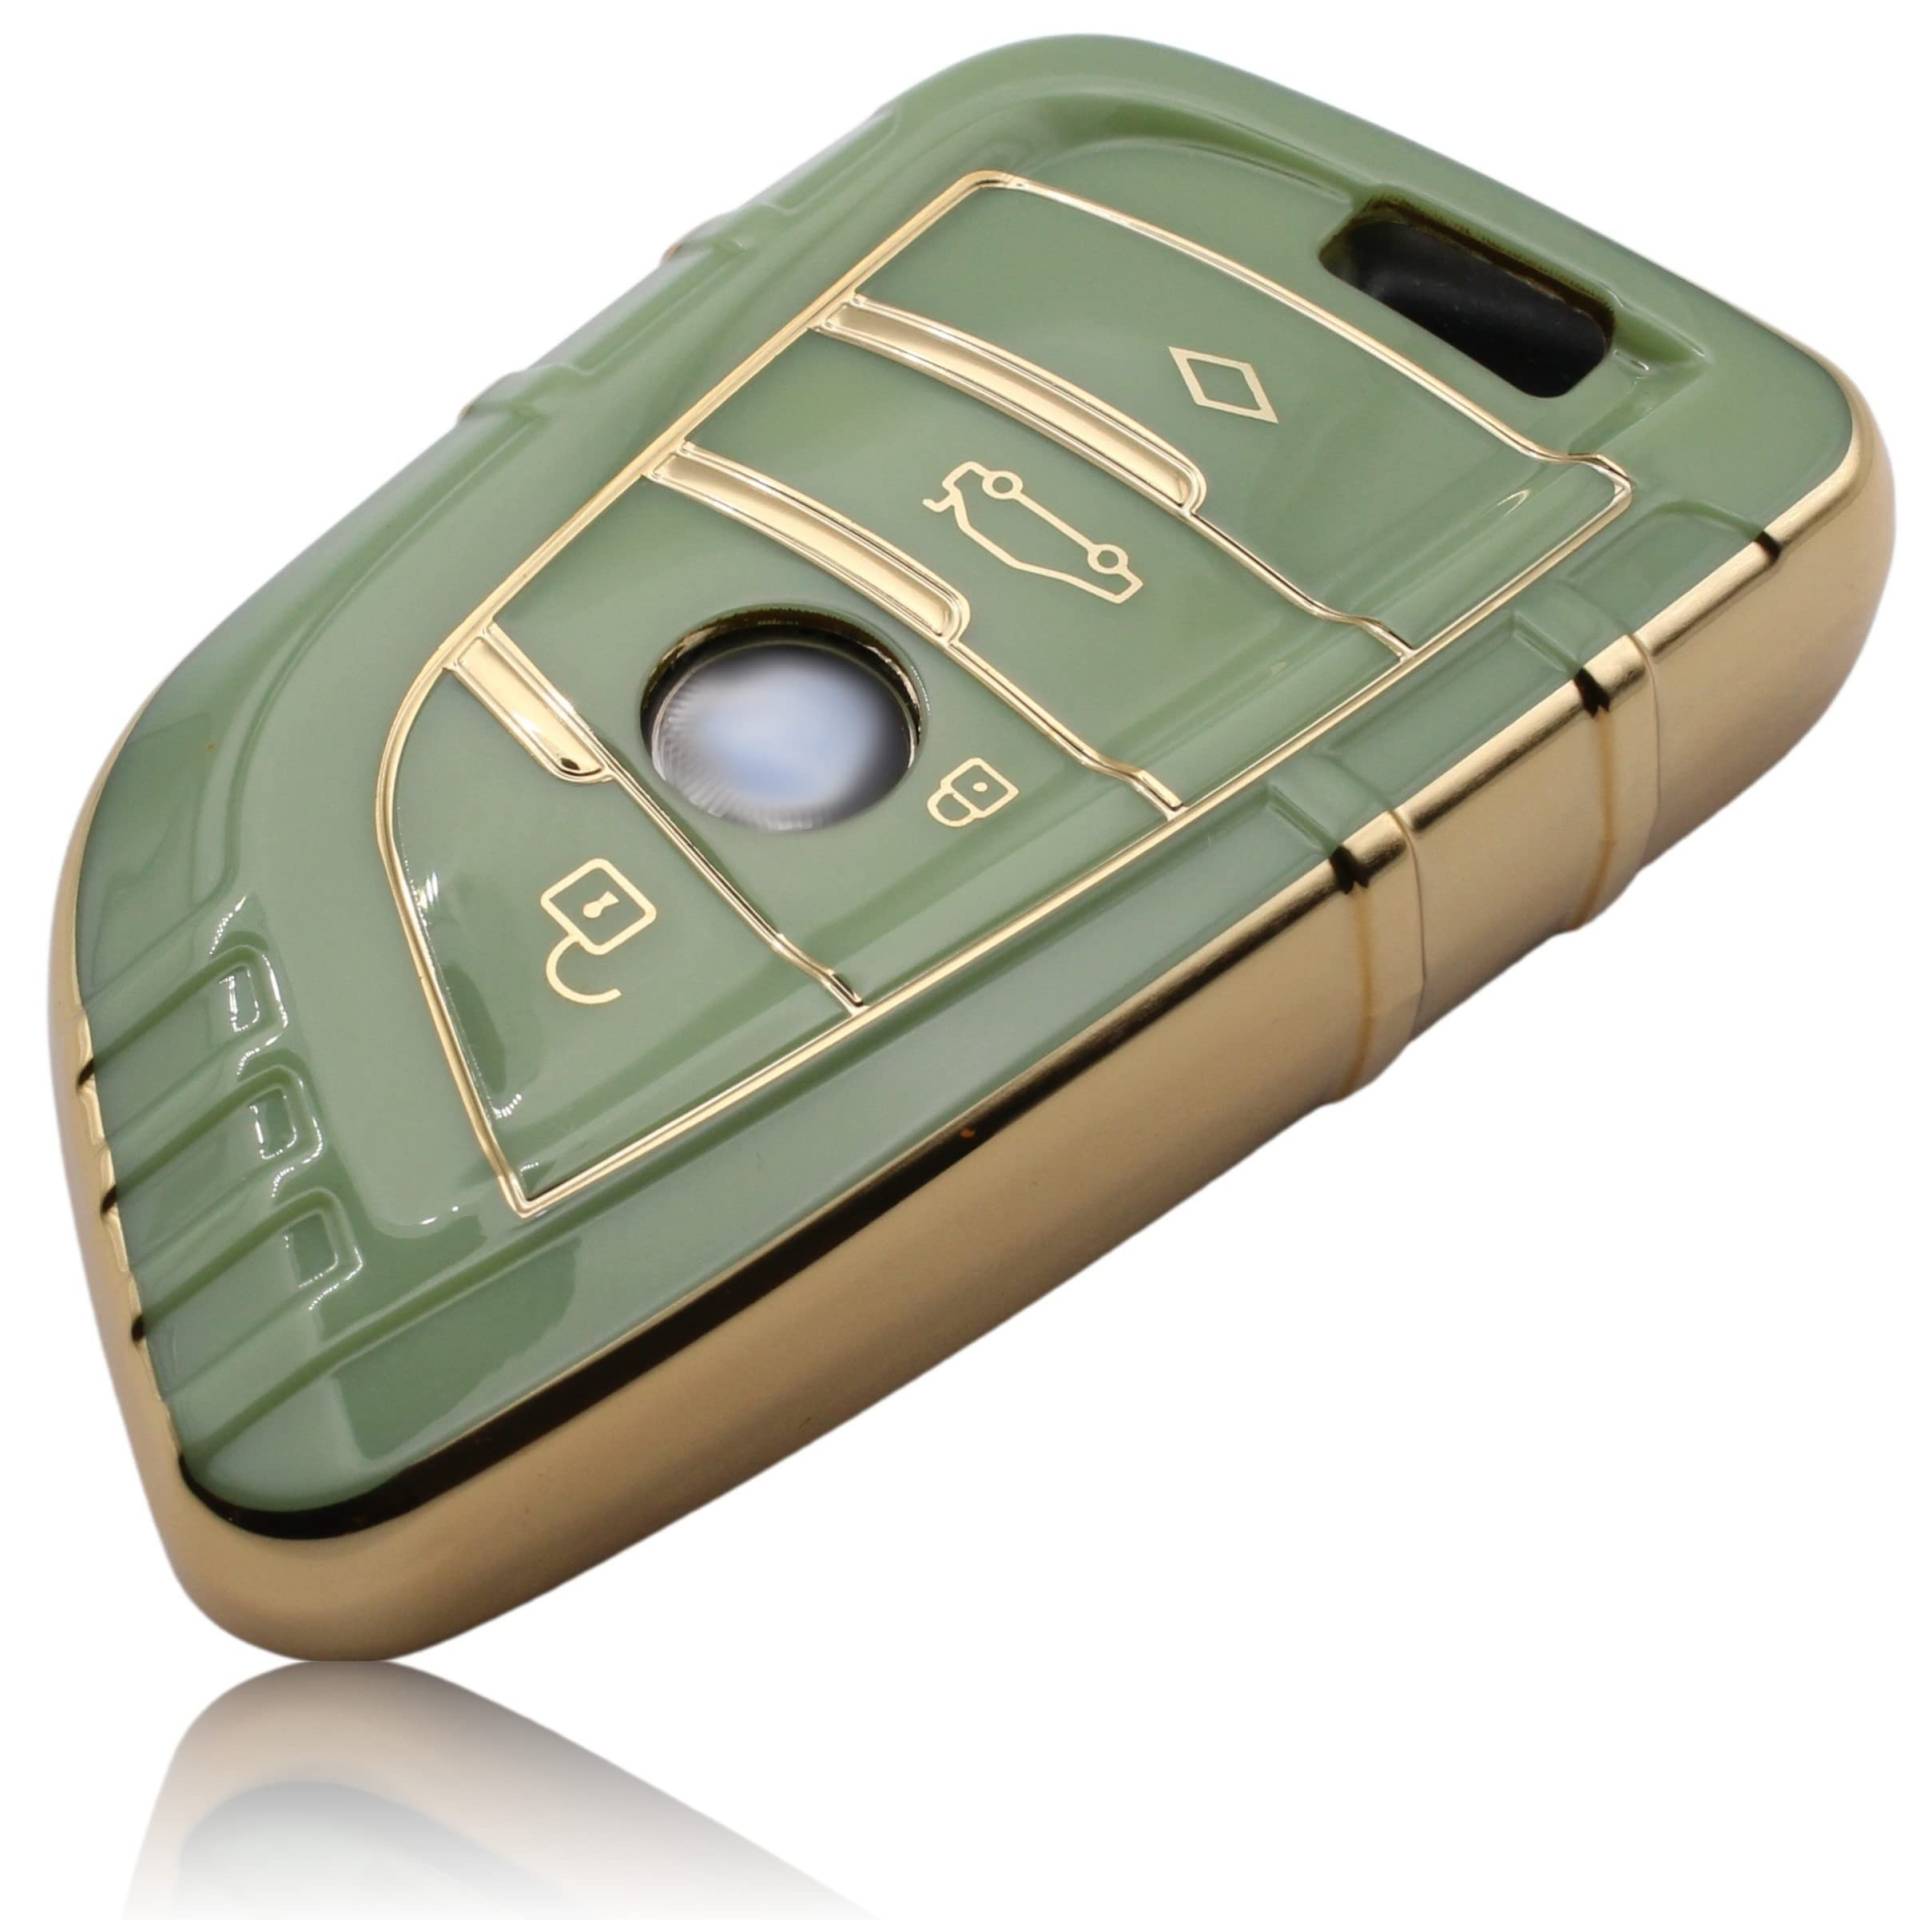 FOAMO Autoschlüssel Hülle kompatibel mit BMW 3-4-Tasten (nur Keyless-Go) - TPU Schutzhülle Cover Schlüssel-Hülle in Grün von FOAMO